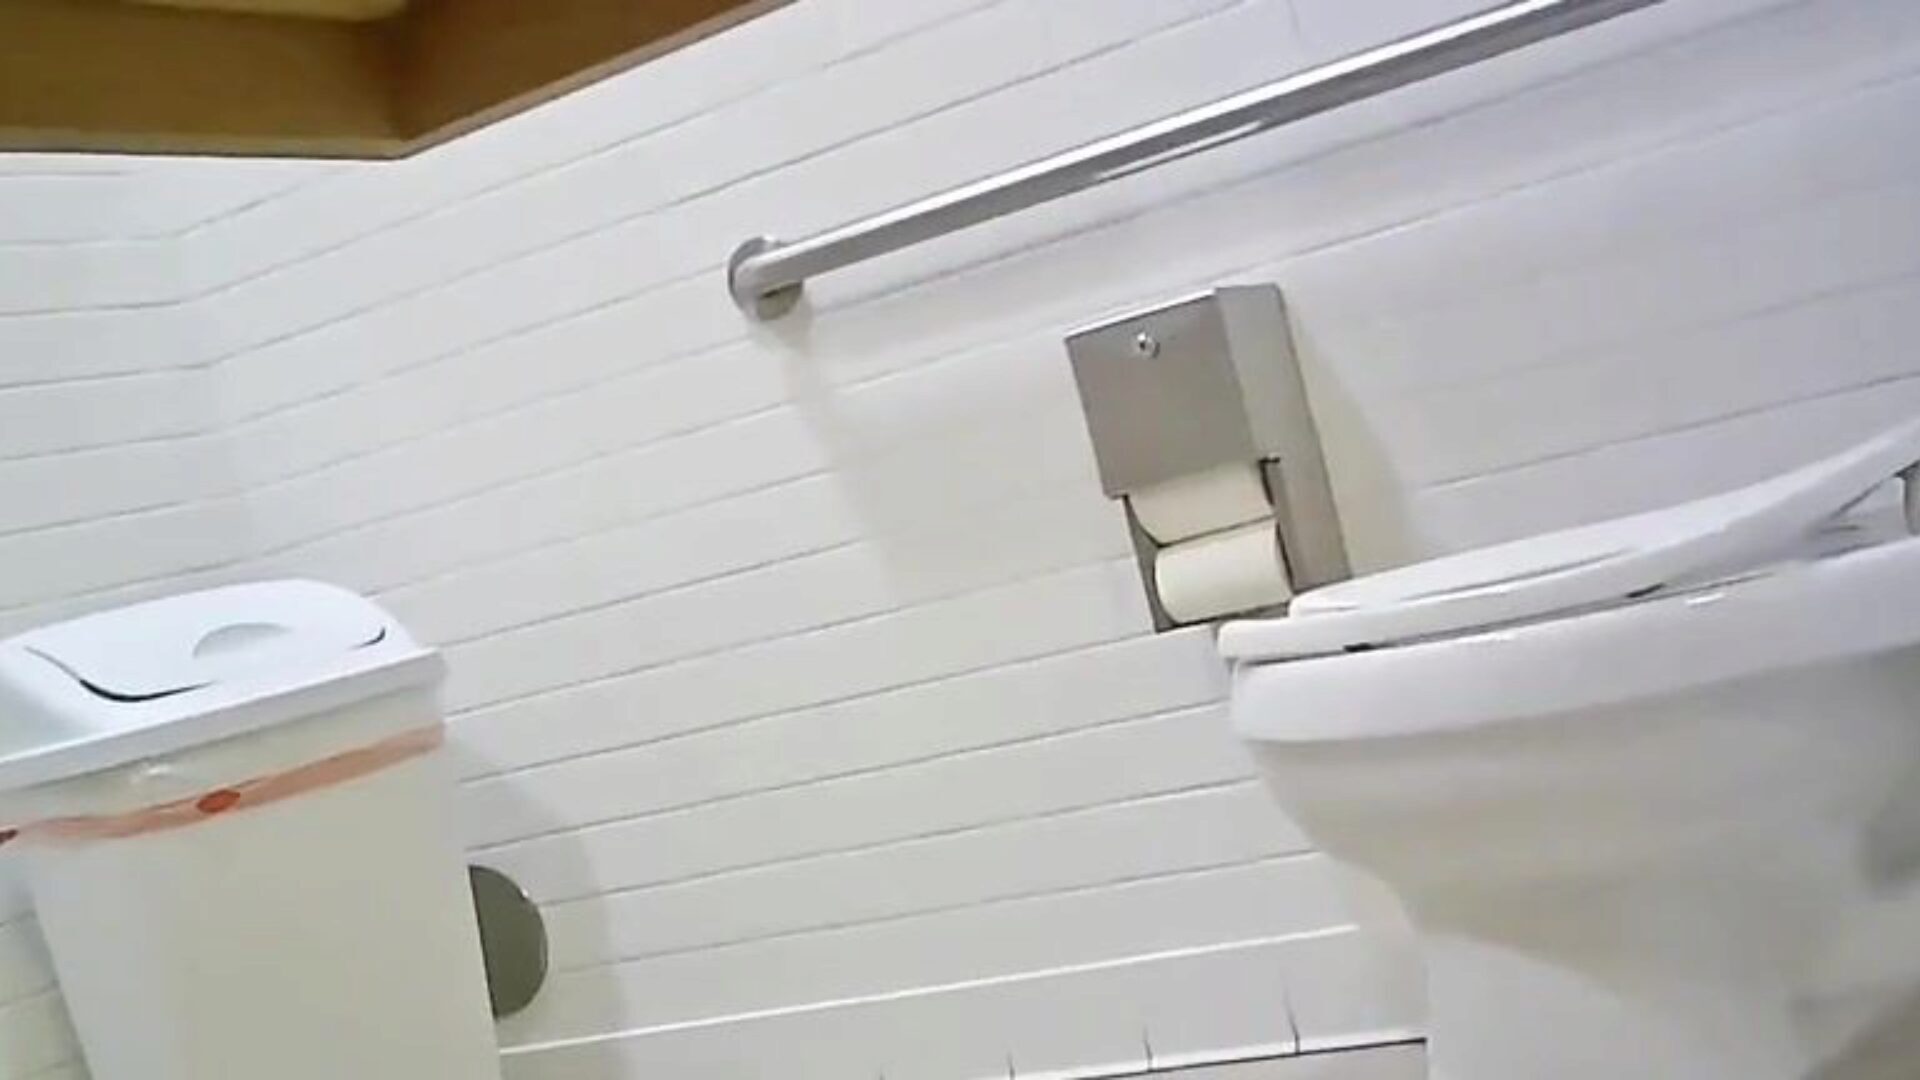 camera de toaletă ascunsă - se potrivește cu un gazou ideal, verifică-l, spune-mi ce crezi; p ’